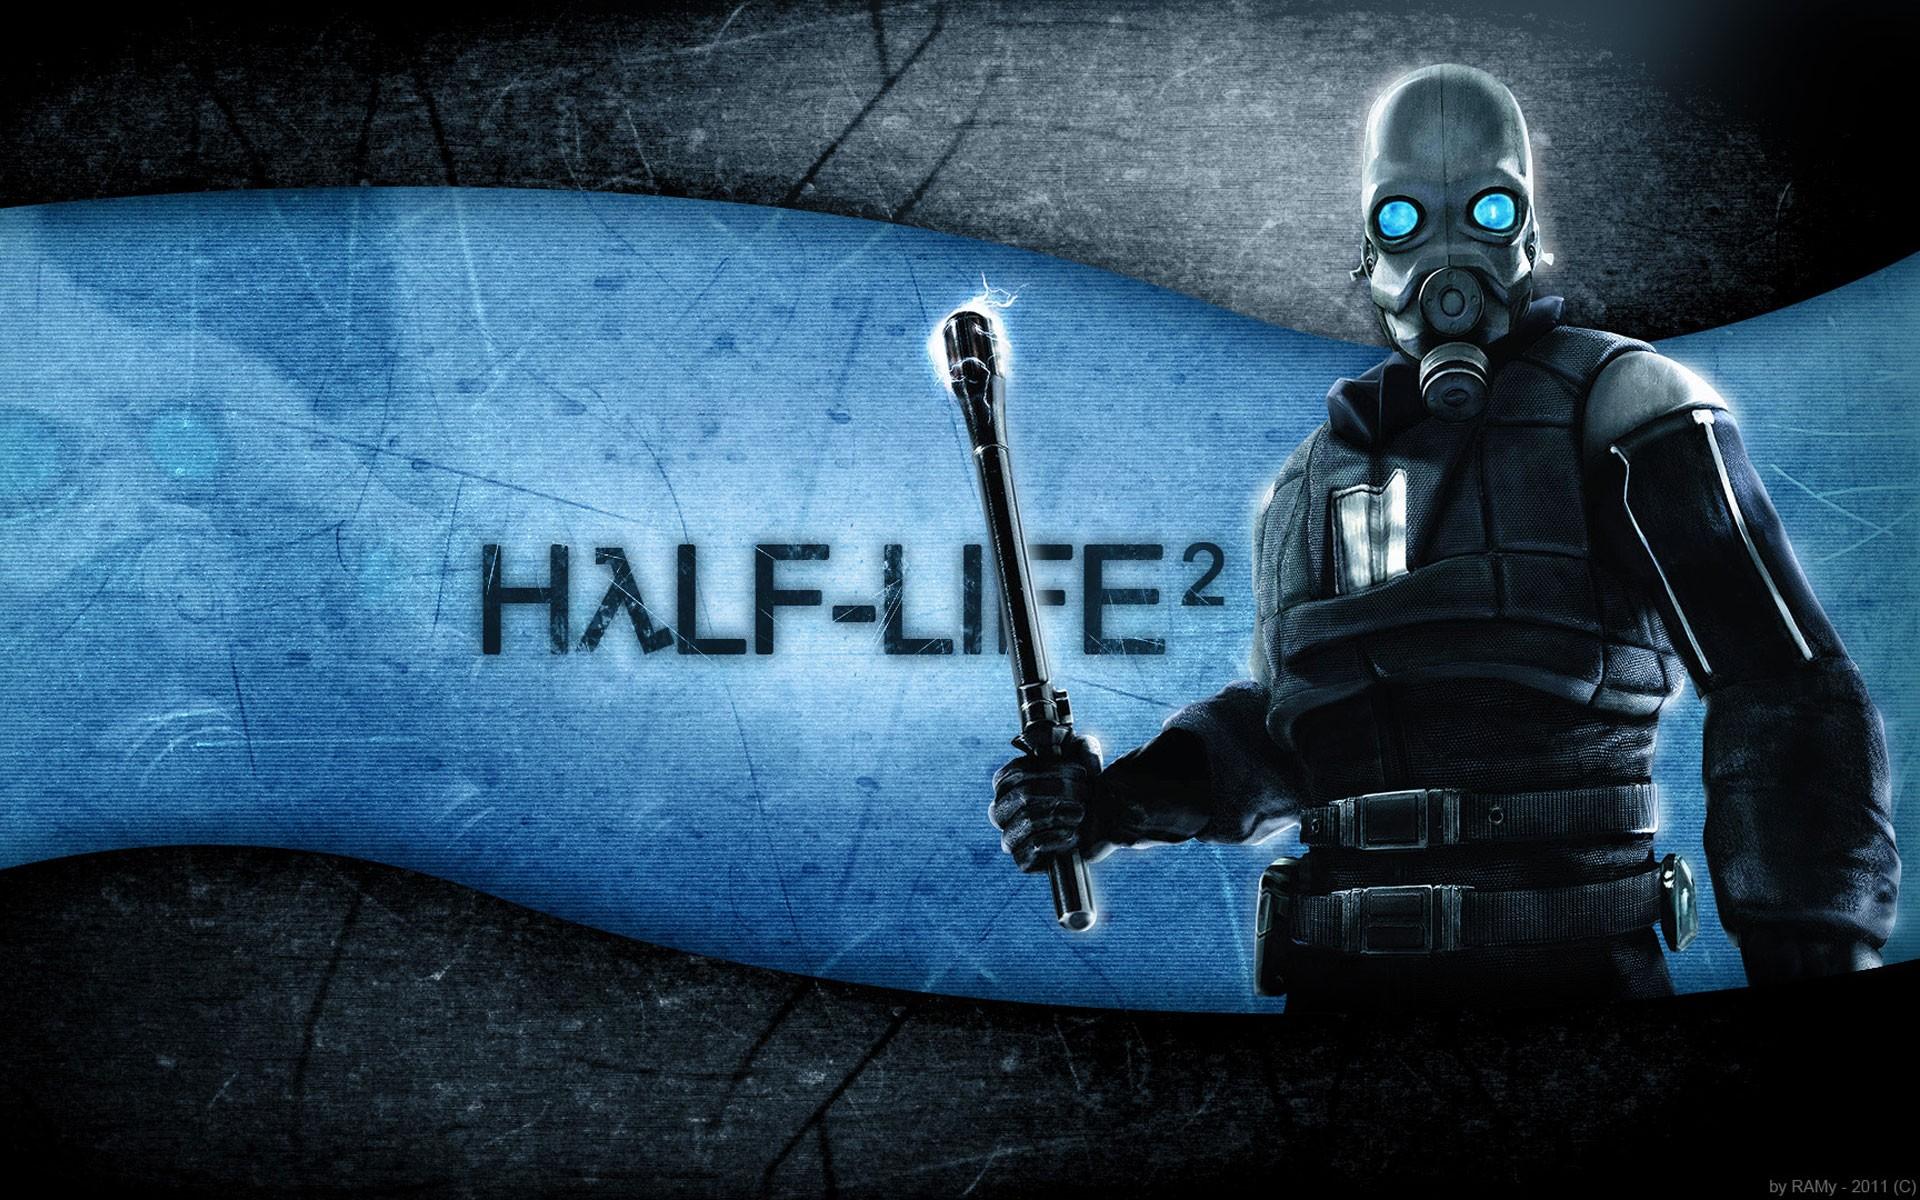 Half Life 2 wallpaperDownload free beautiful full HD wallpaper